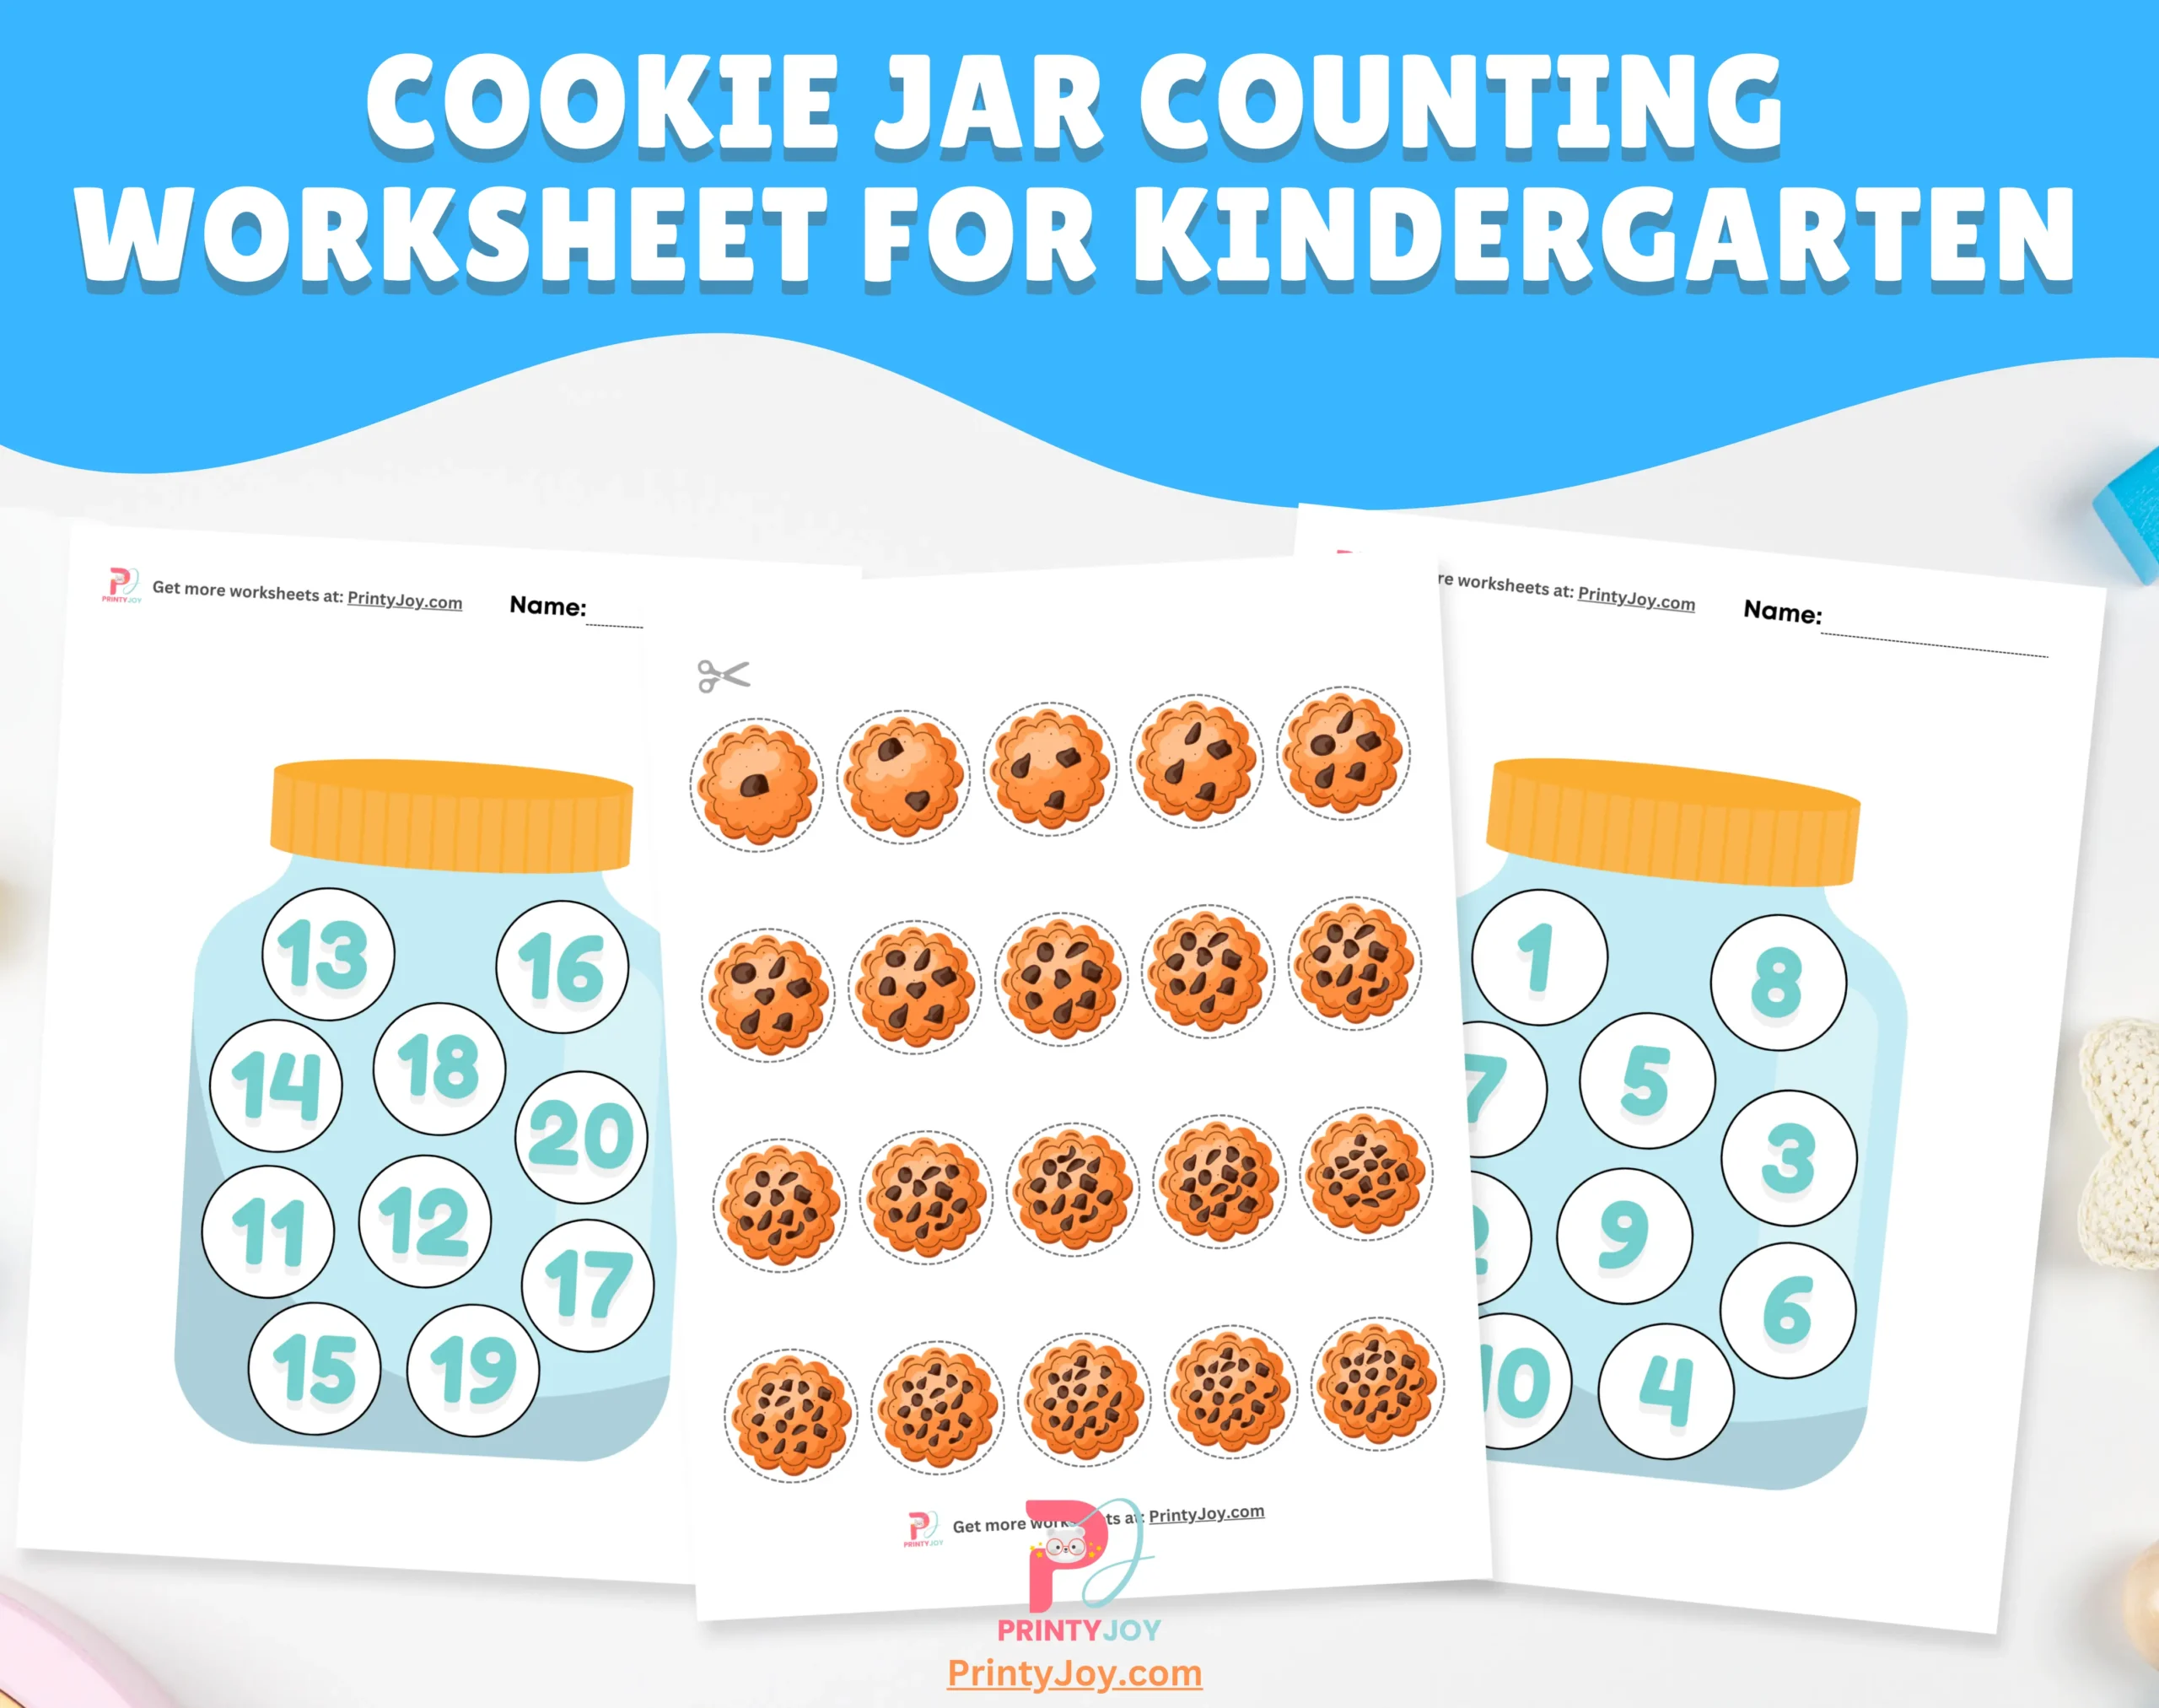 Cookie Jar Counting Worksheet for Kindergarten